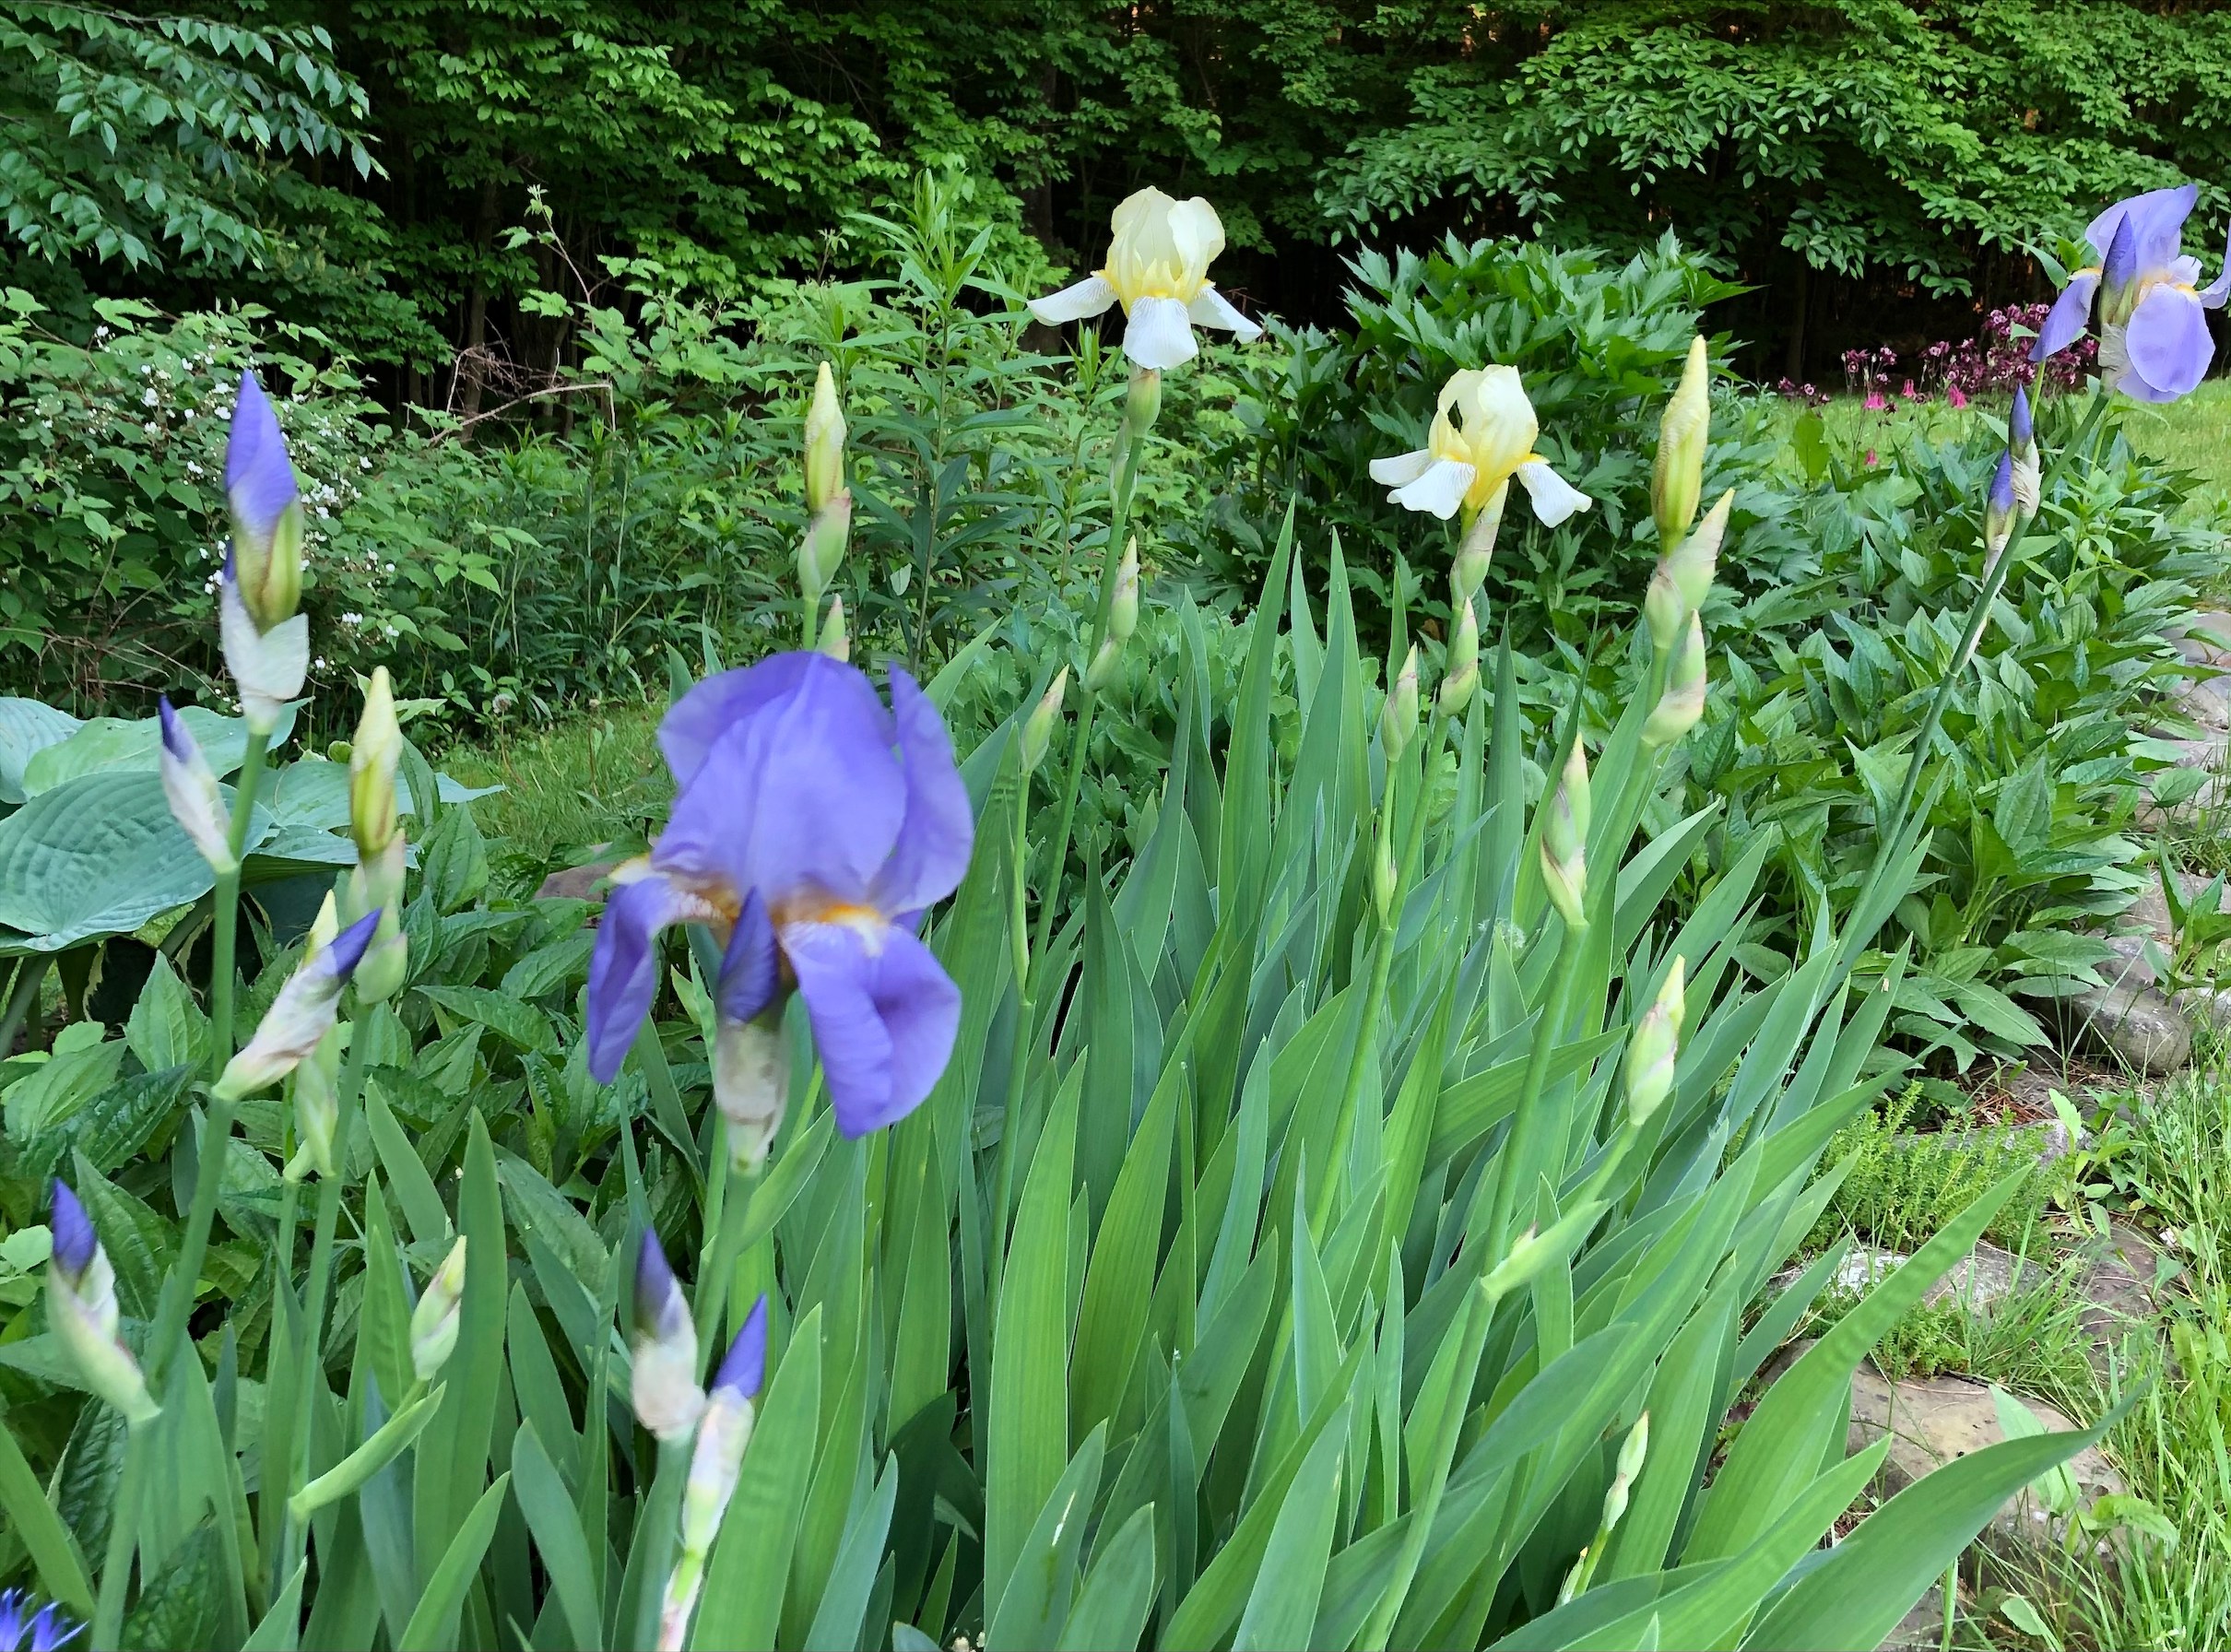 purple and white irises